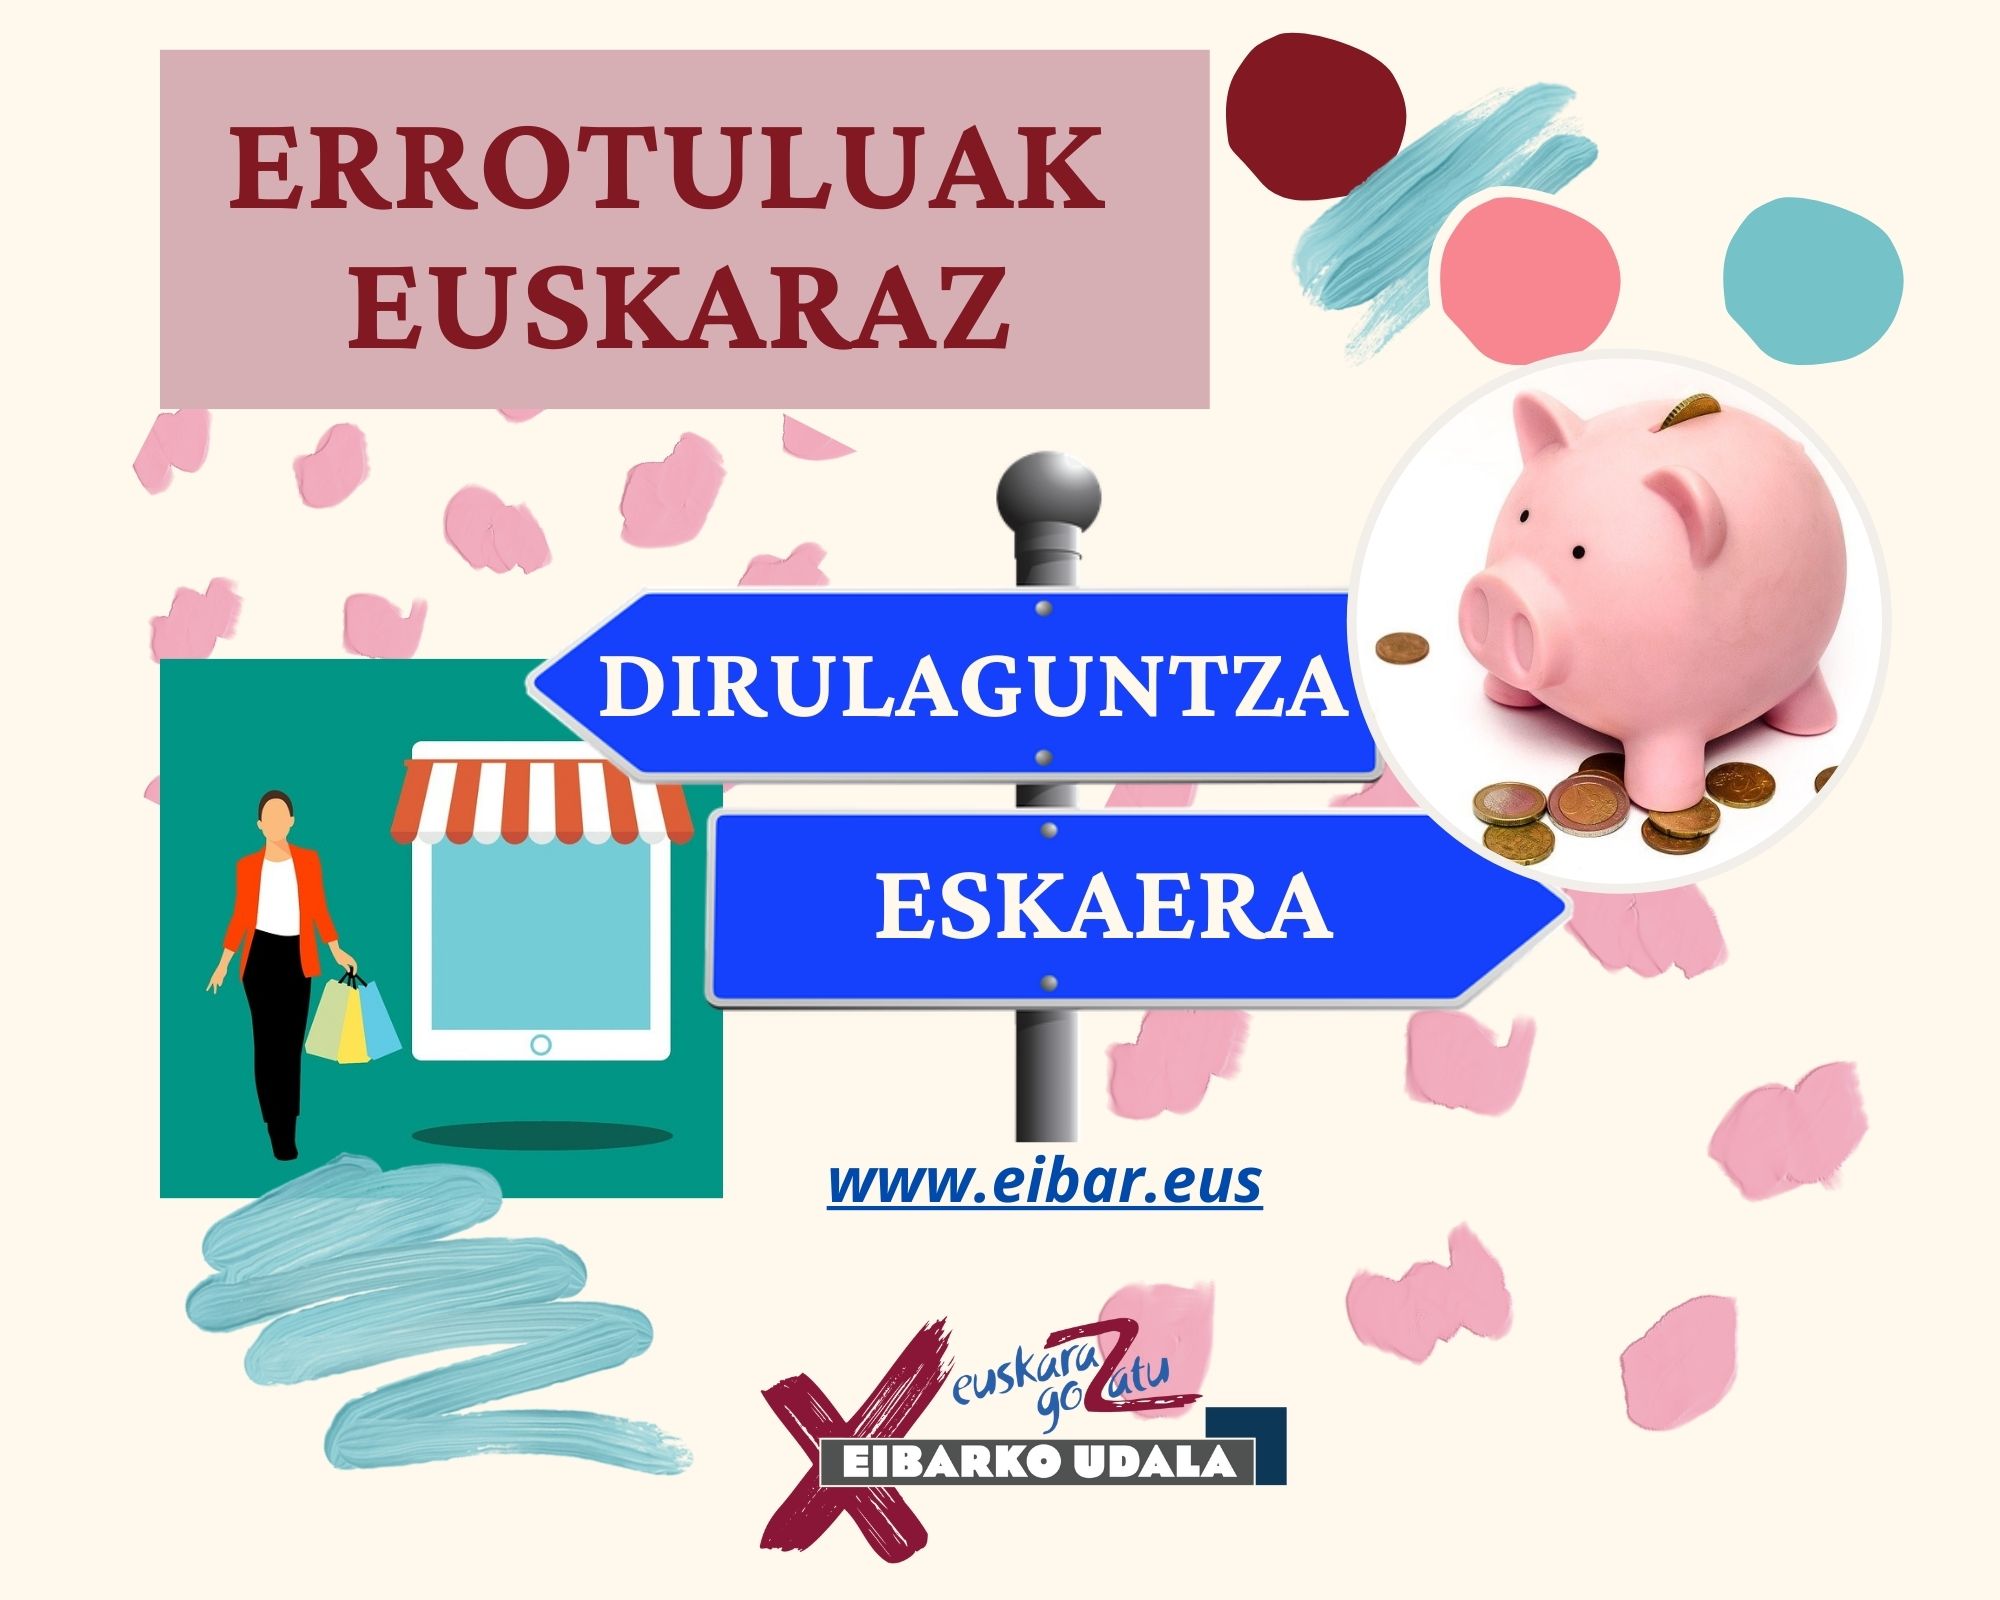 Abierto el plazo para la solicitud de subvenciones para poner rótulos en euskera en establecimientos